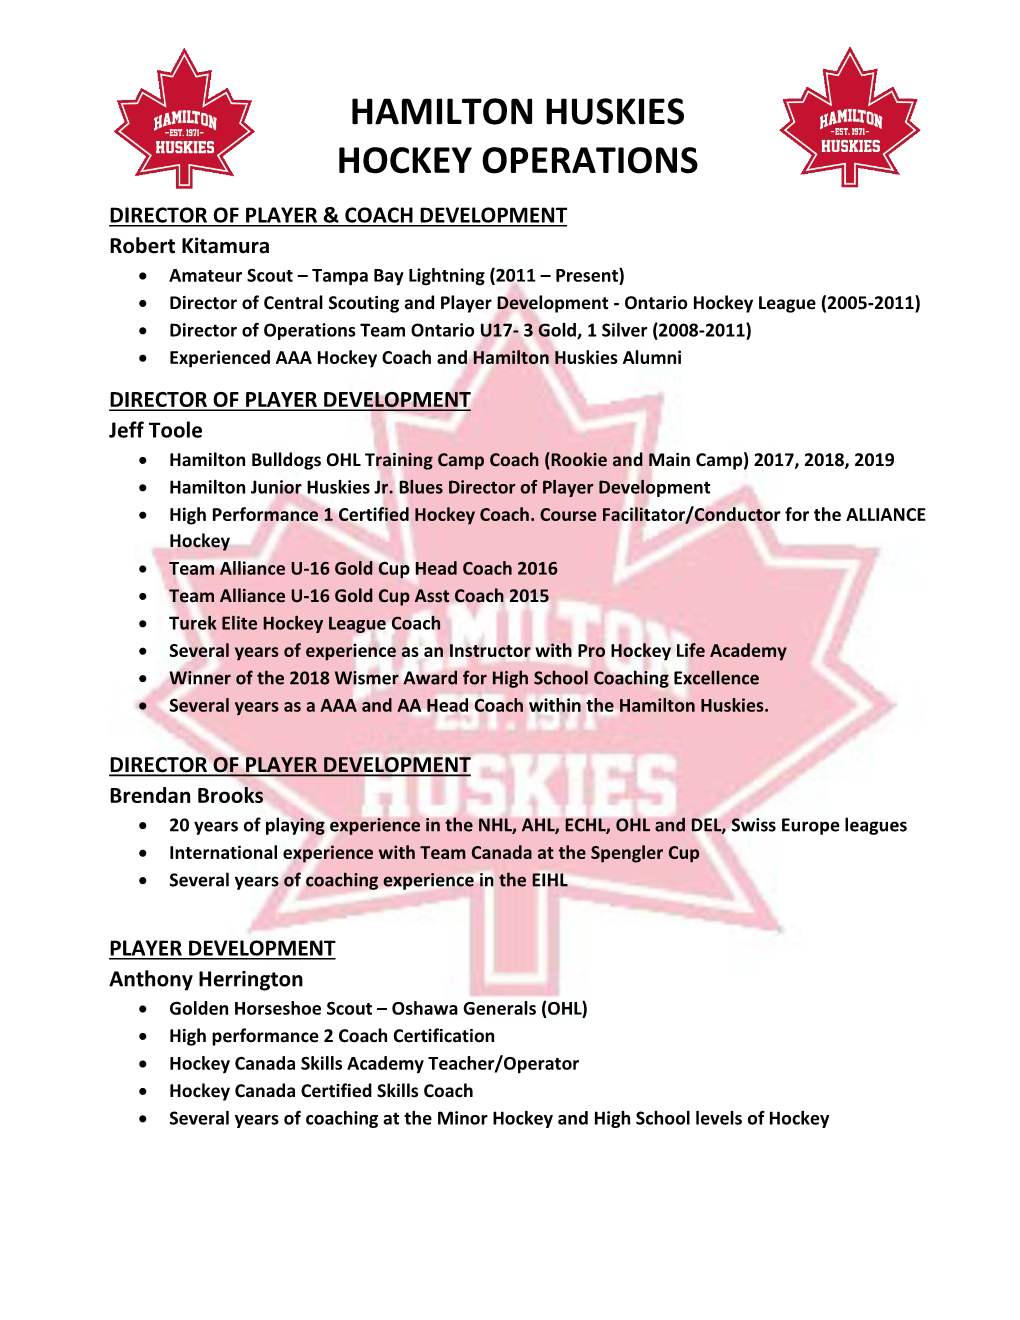 Hamilton Huskies Hockey Operations